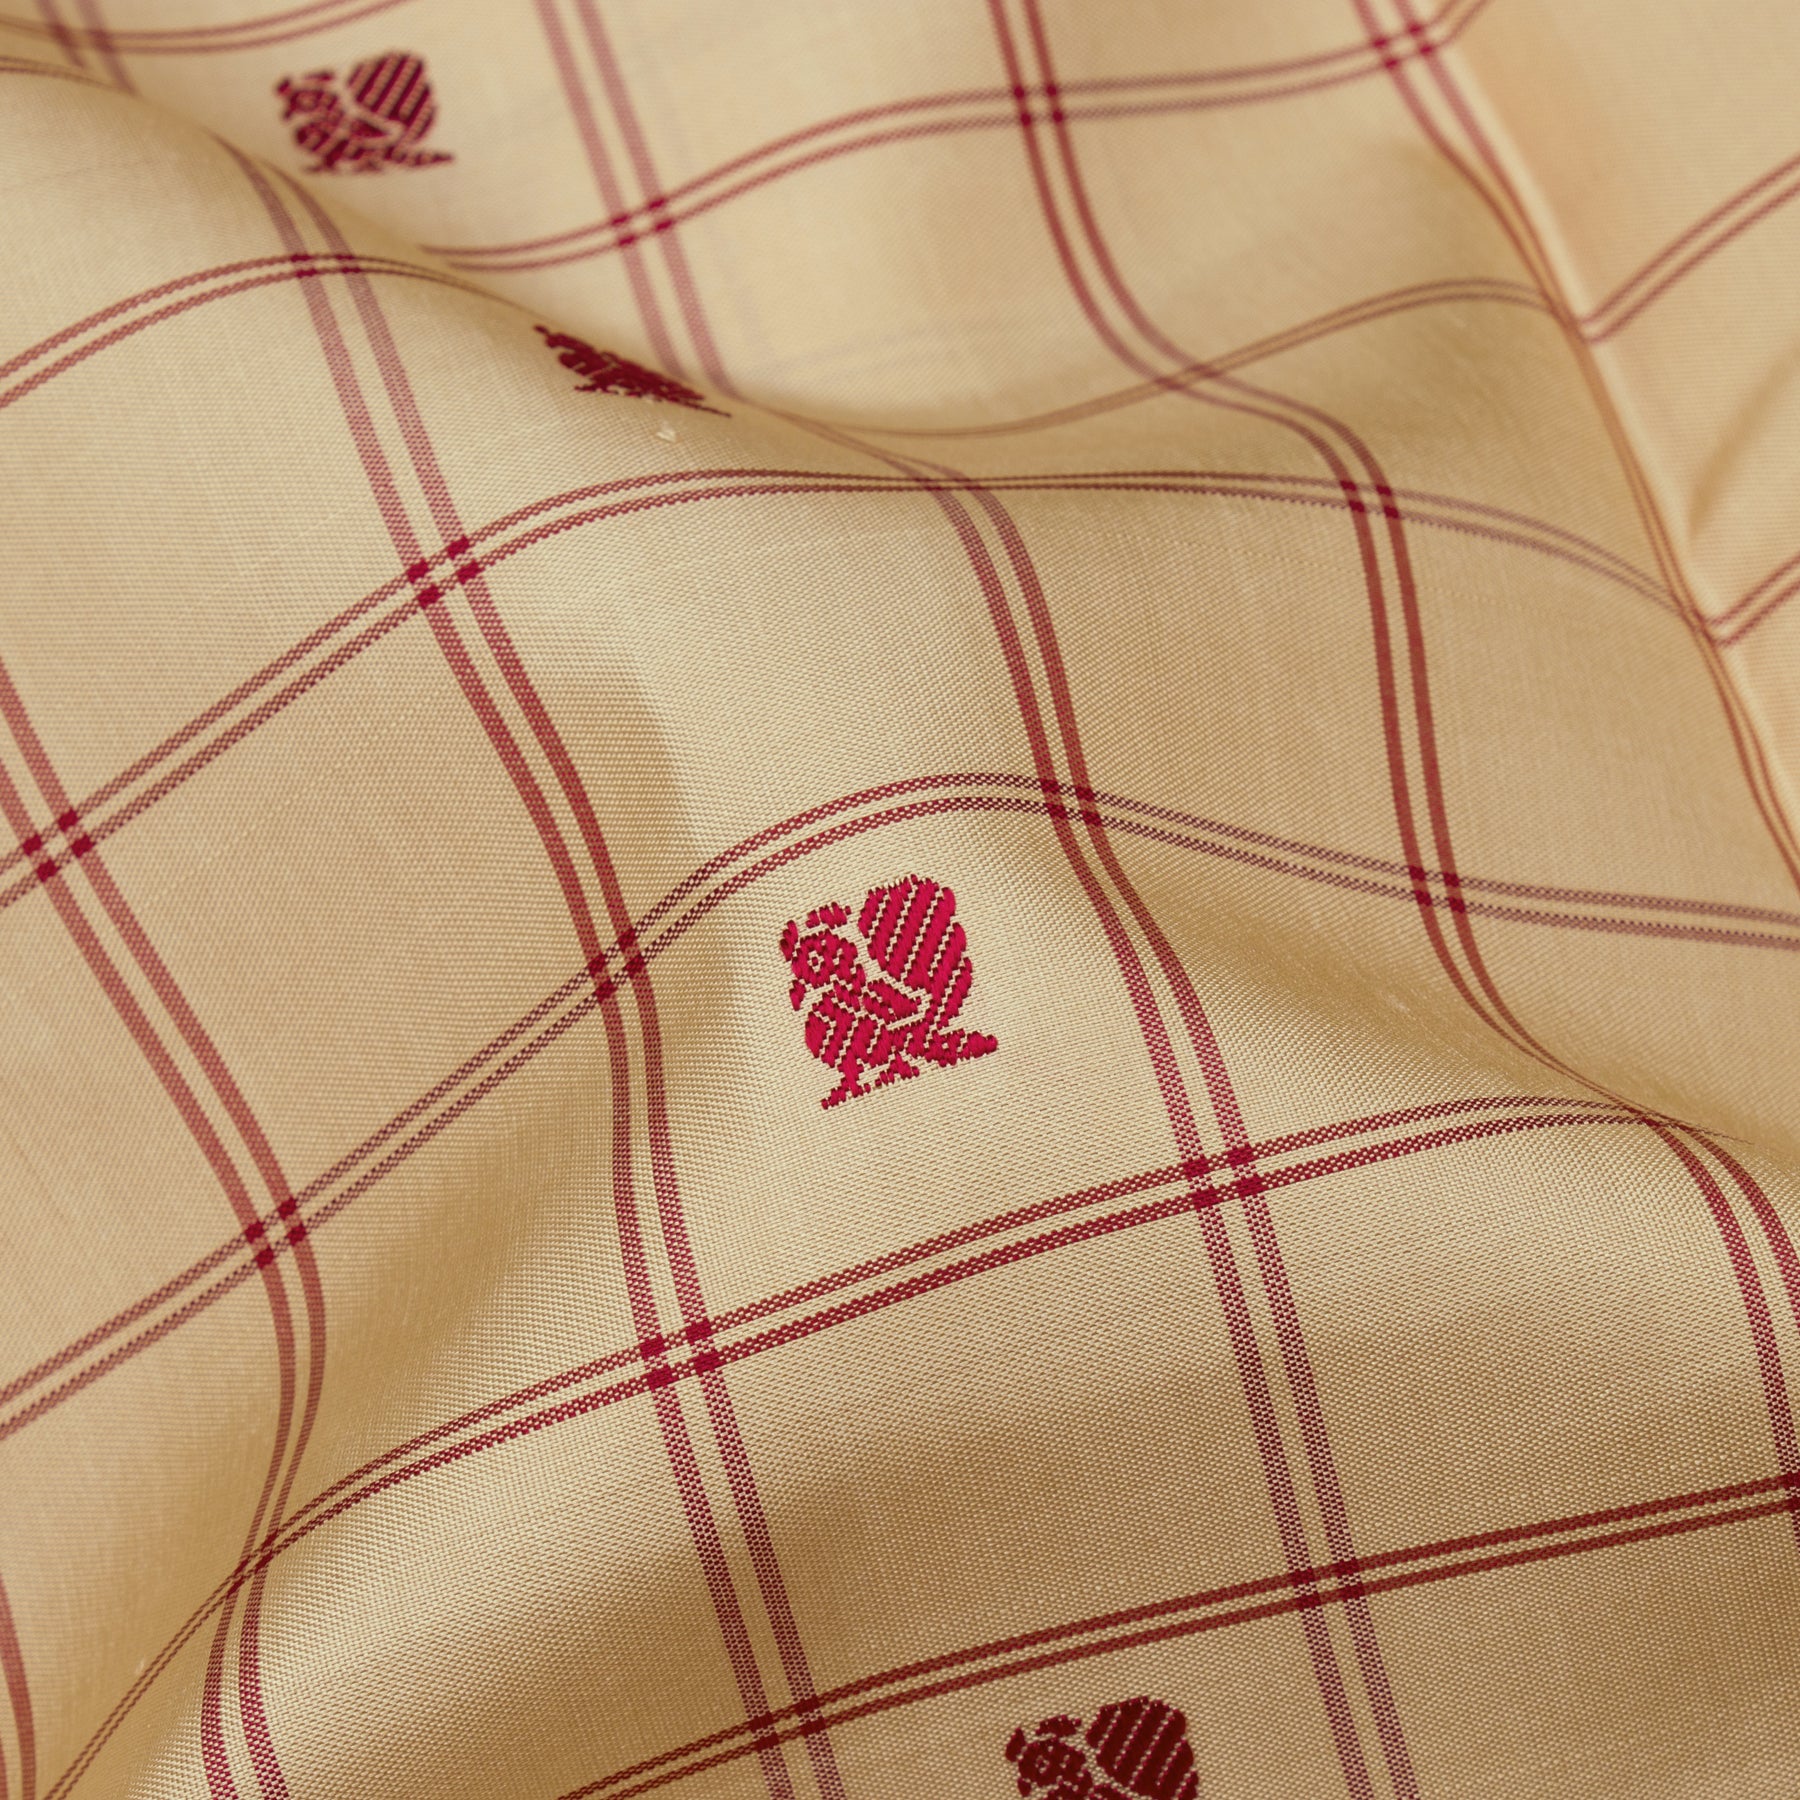 Kanakavalli Kanjivaram Silk Sari 23-613-HS001-08432 - Fabric View